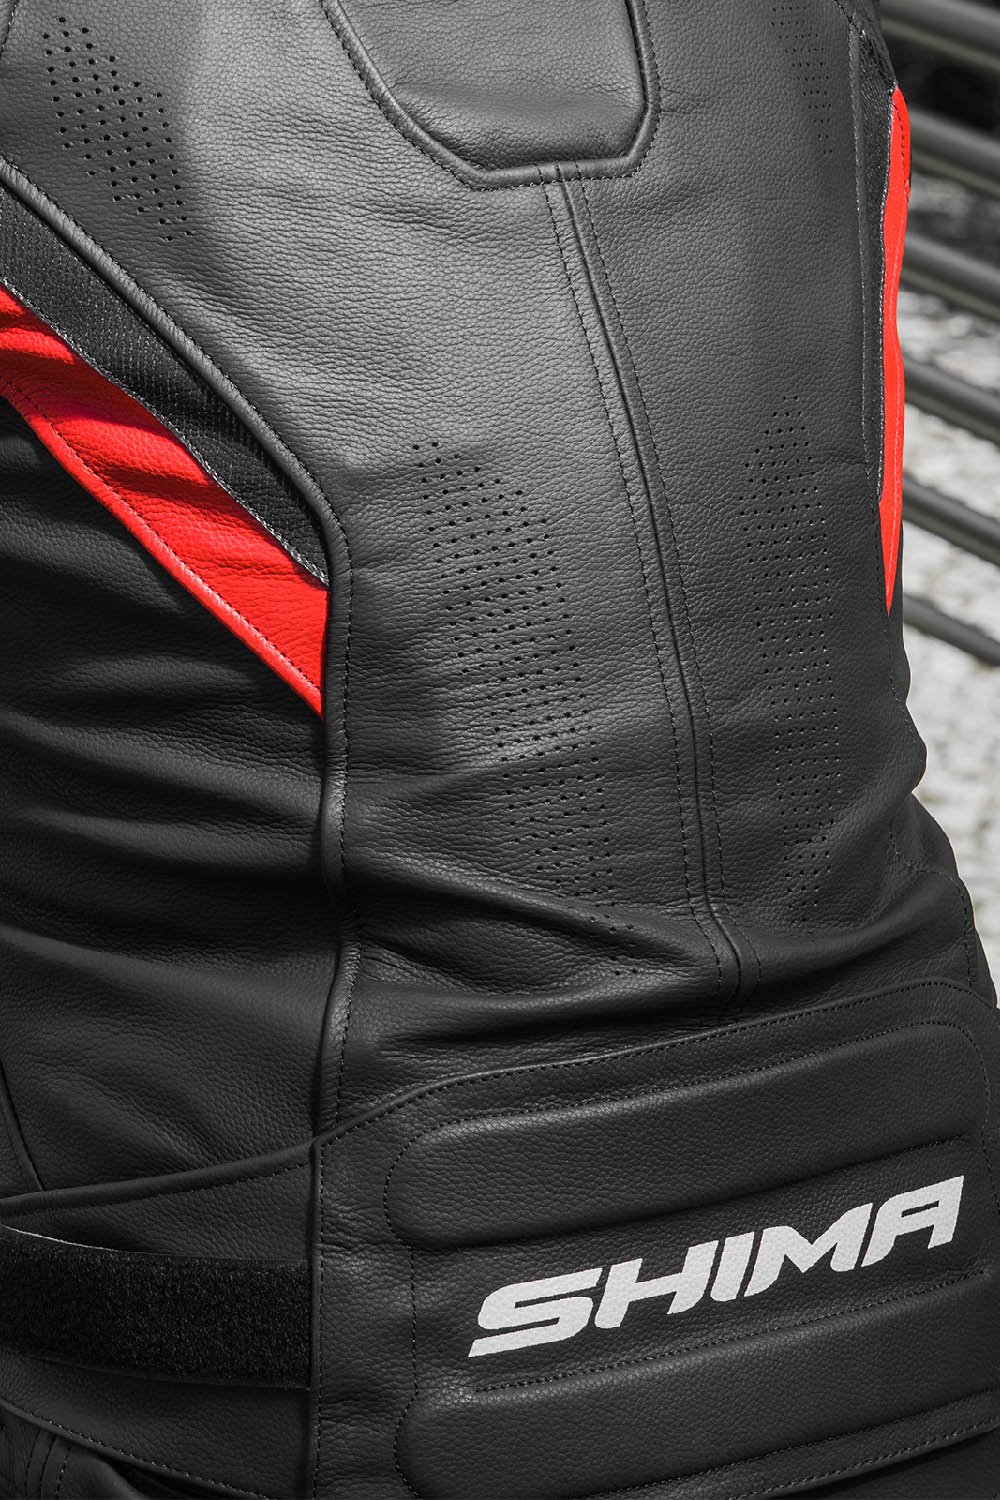 Спортивная куртка кожаная SHIMA CHASE вид со спины для мотоциклистов купить по низкой цене